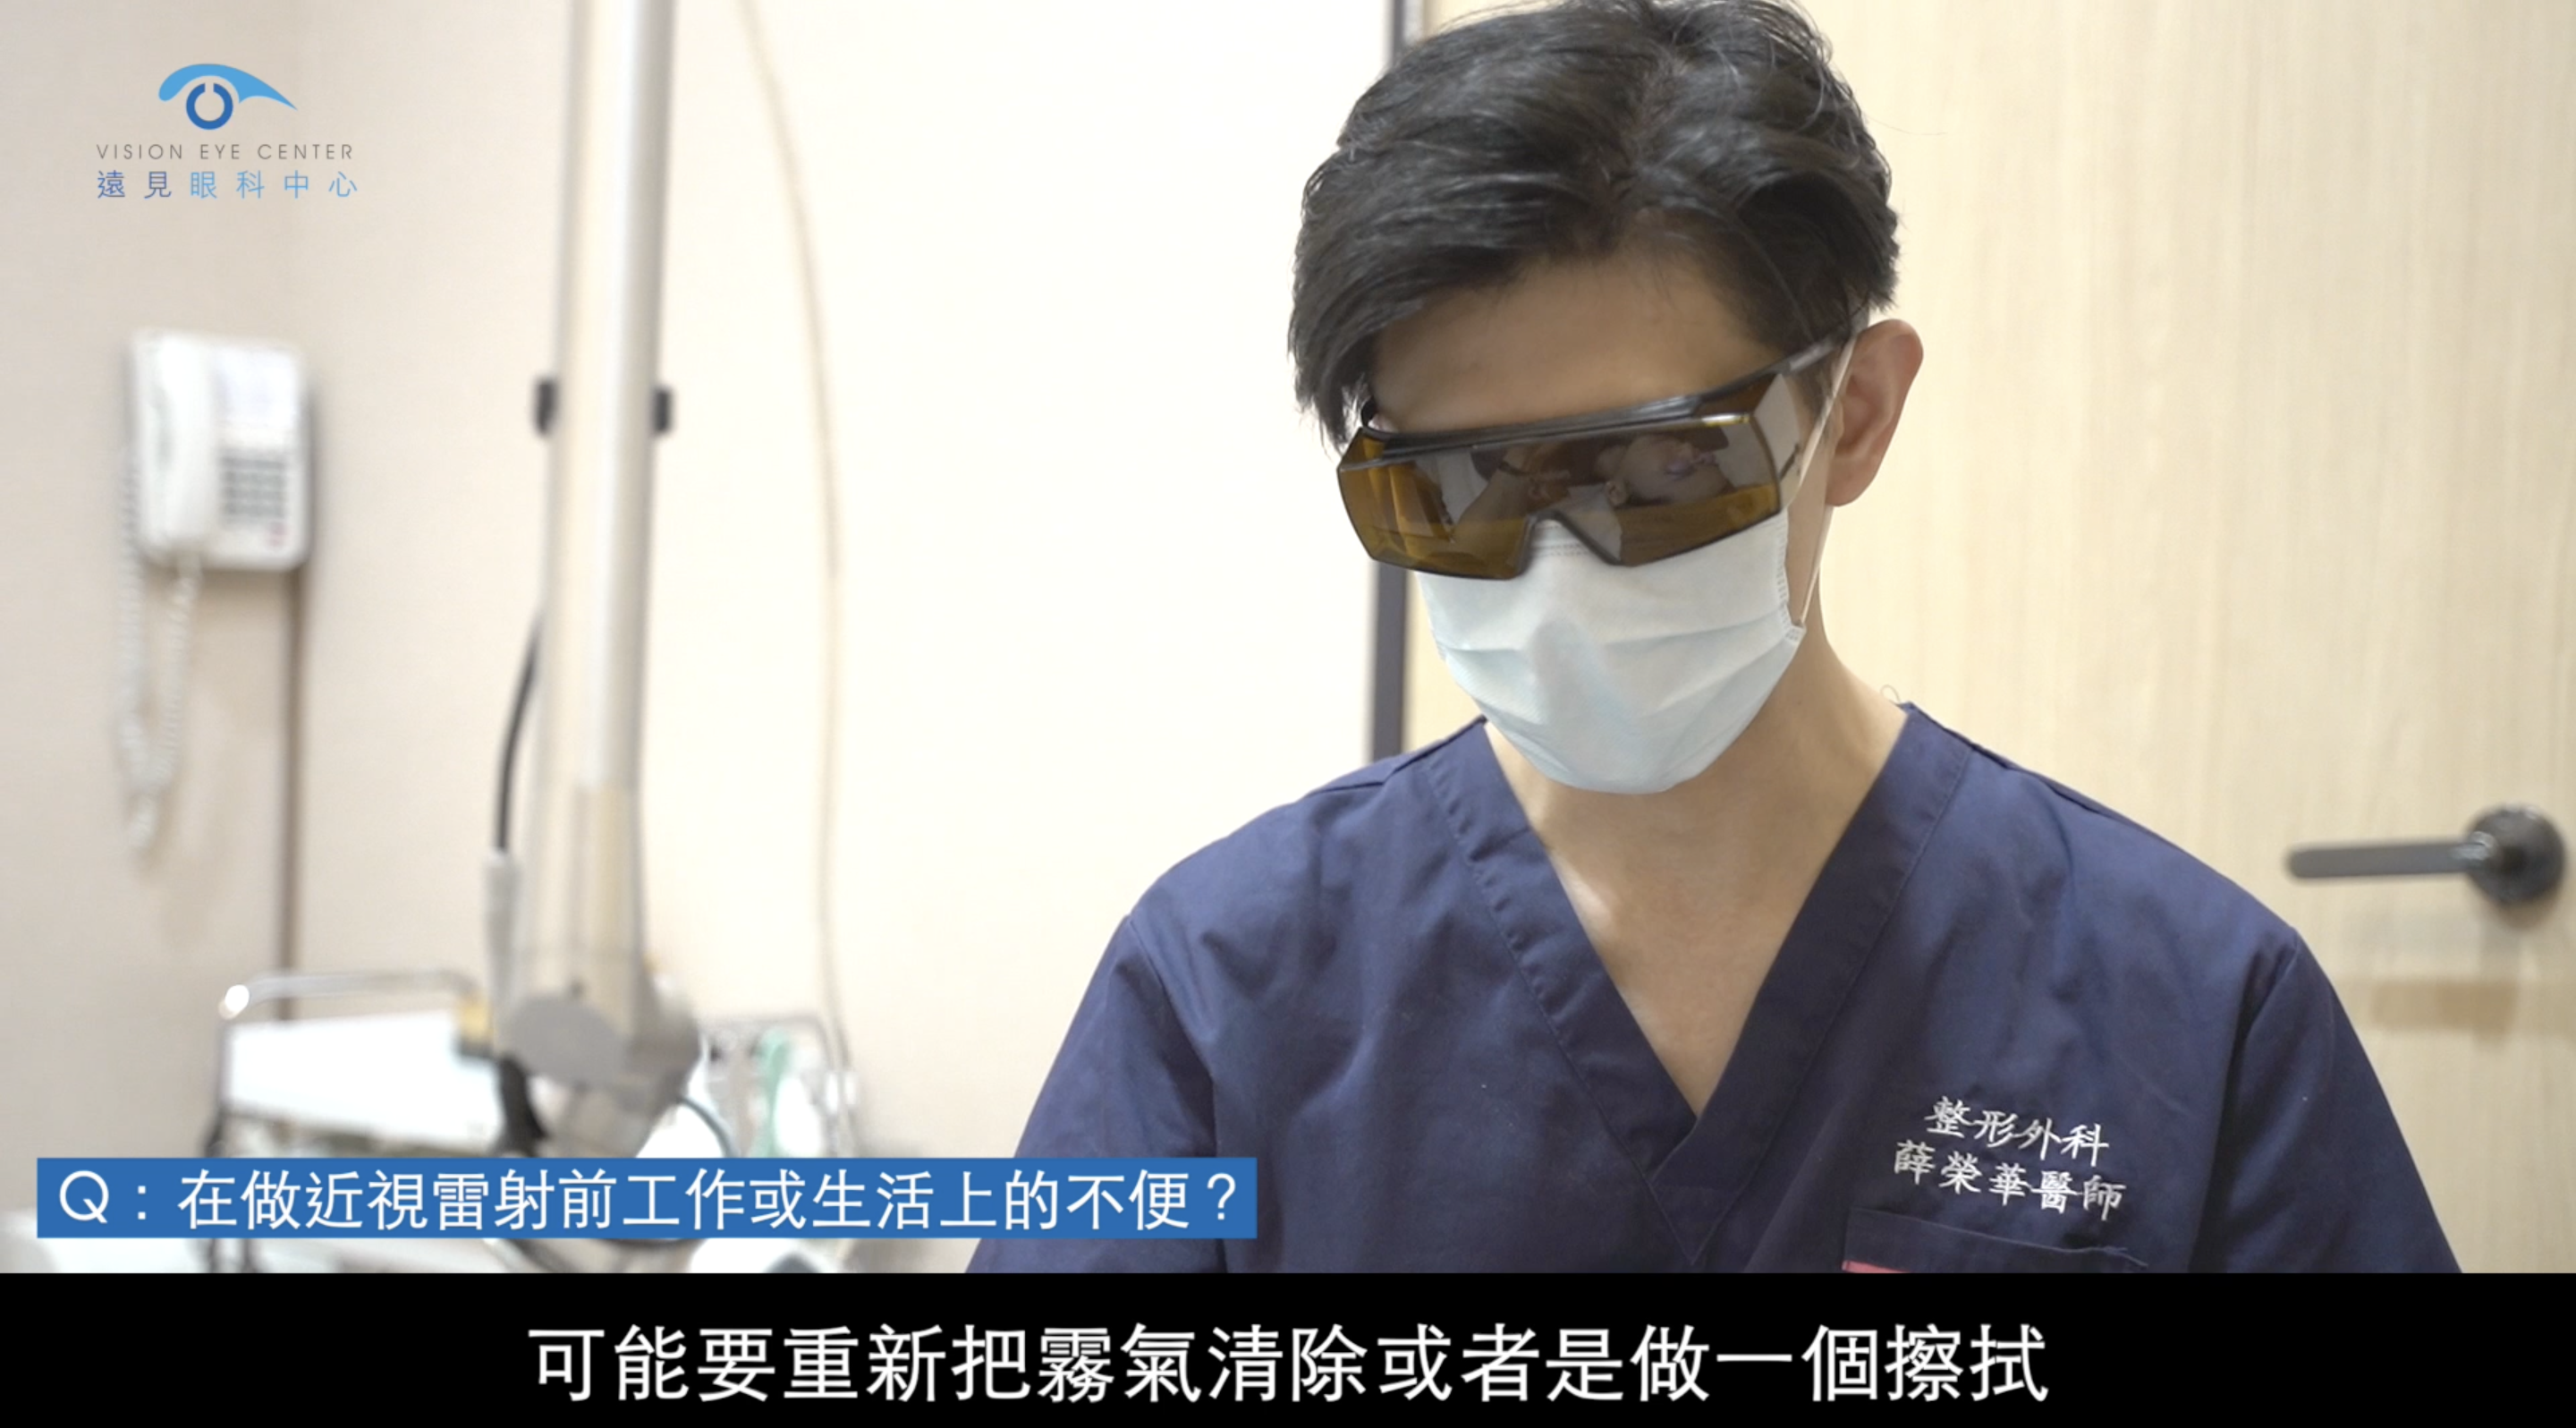 薛榮華醫師在診療時需要戴眼鏡及護目鏡，造成許多看診時的困擾